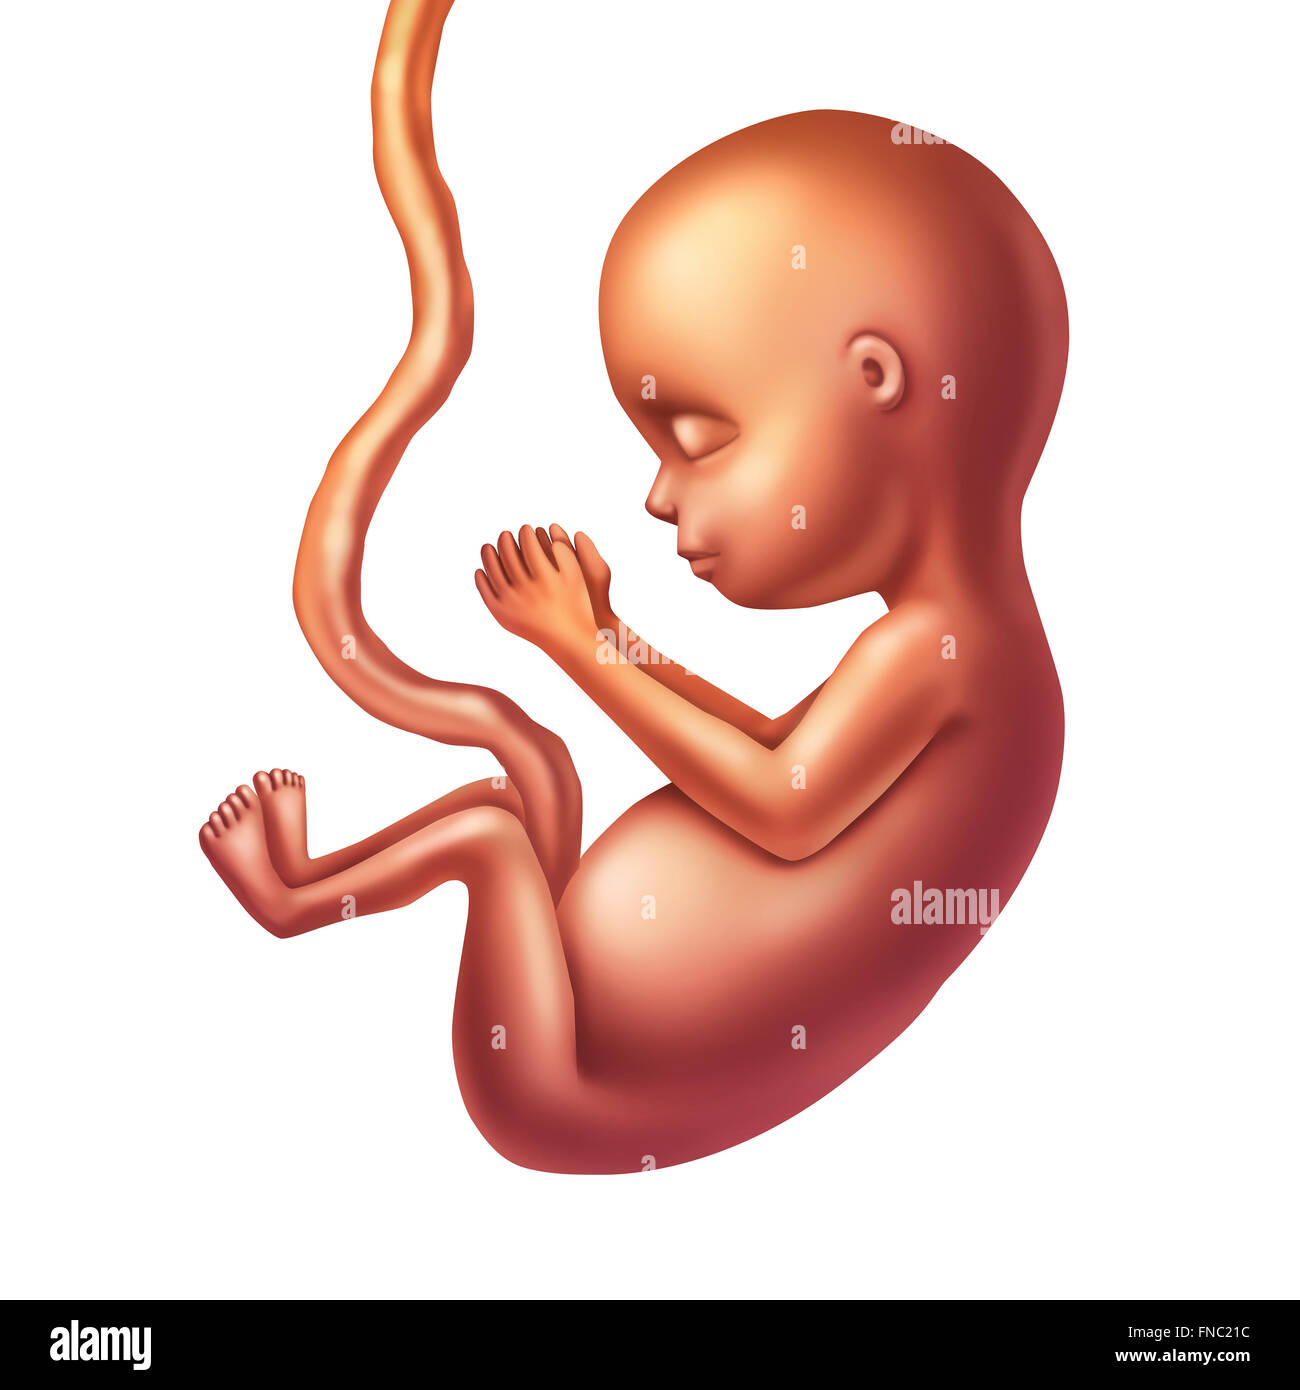 Foetus humain concept illustration comme un bébé en pleine croissance prénatale avec un cordon d'umbilicle isolé sur un fond blanc comme un symbole de la médecine obstétricale pour la grossesse et la santé de la santé fœtale icône. Banque D'Images